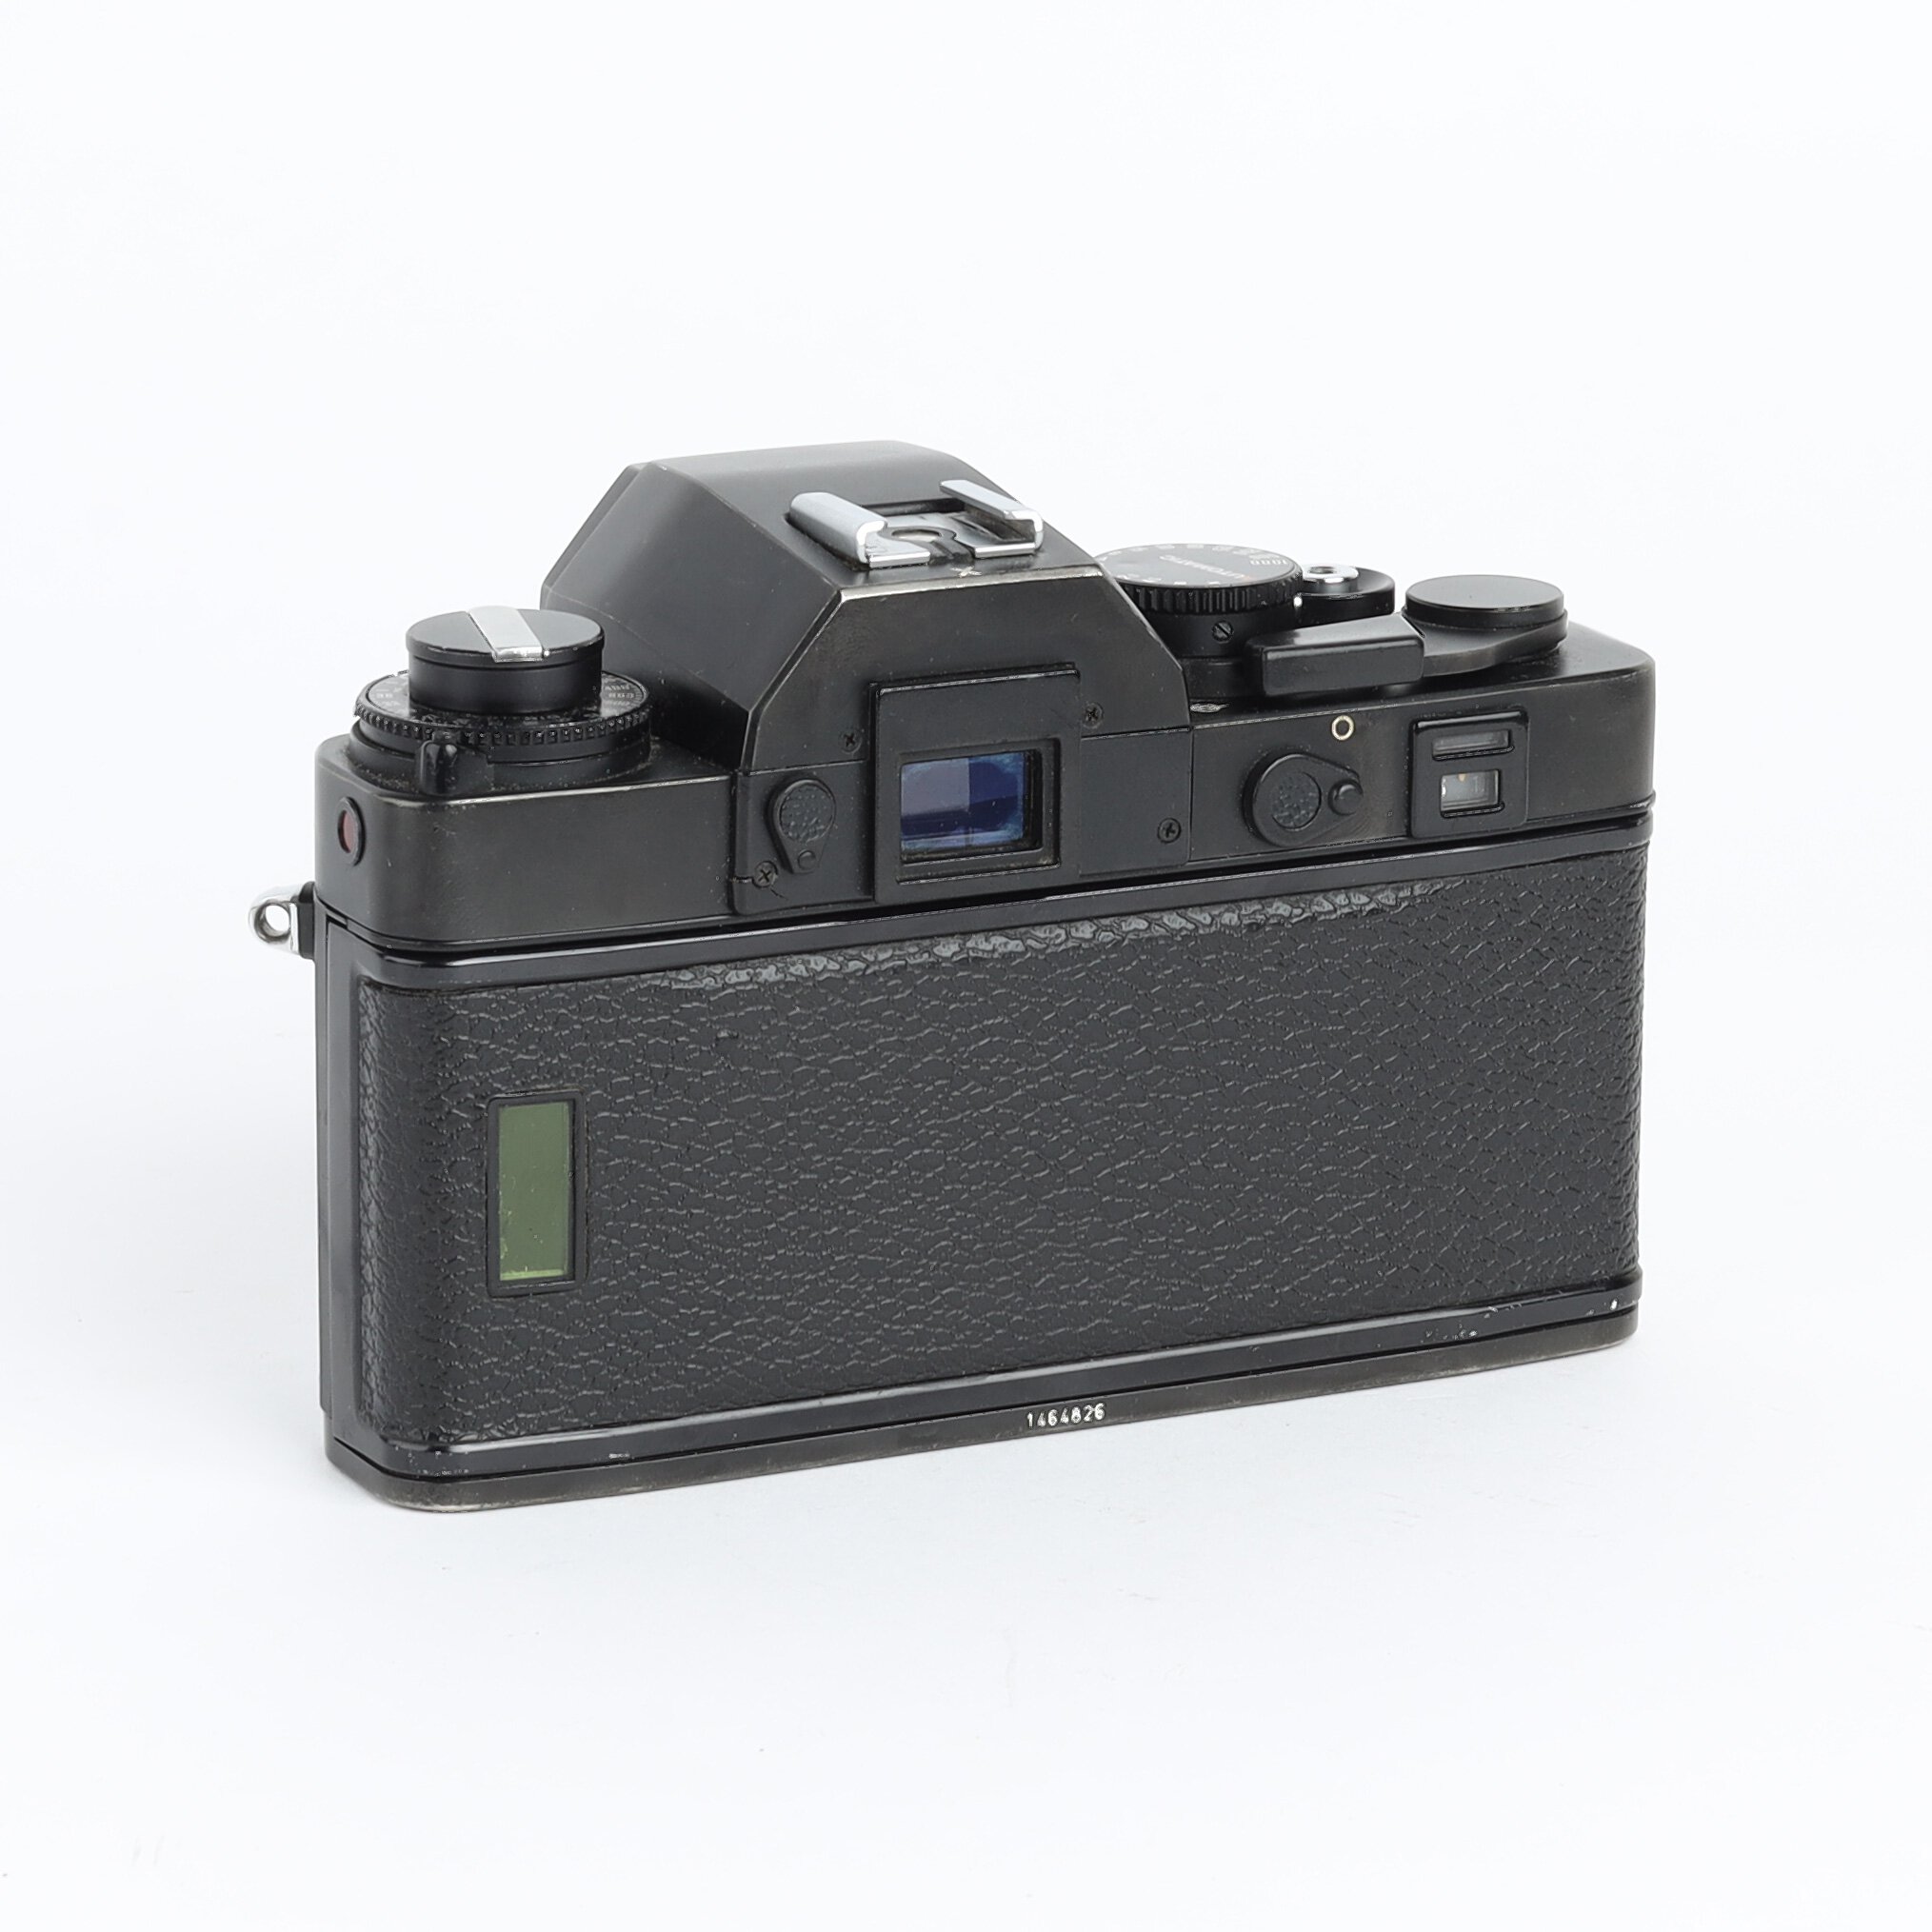 Leitz Leica R3 Electronic Gehäuse